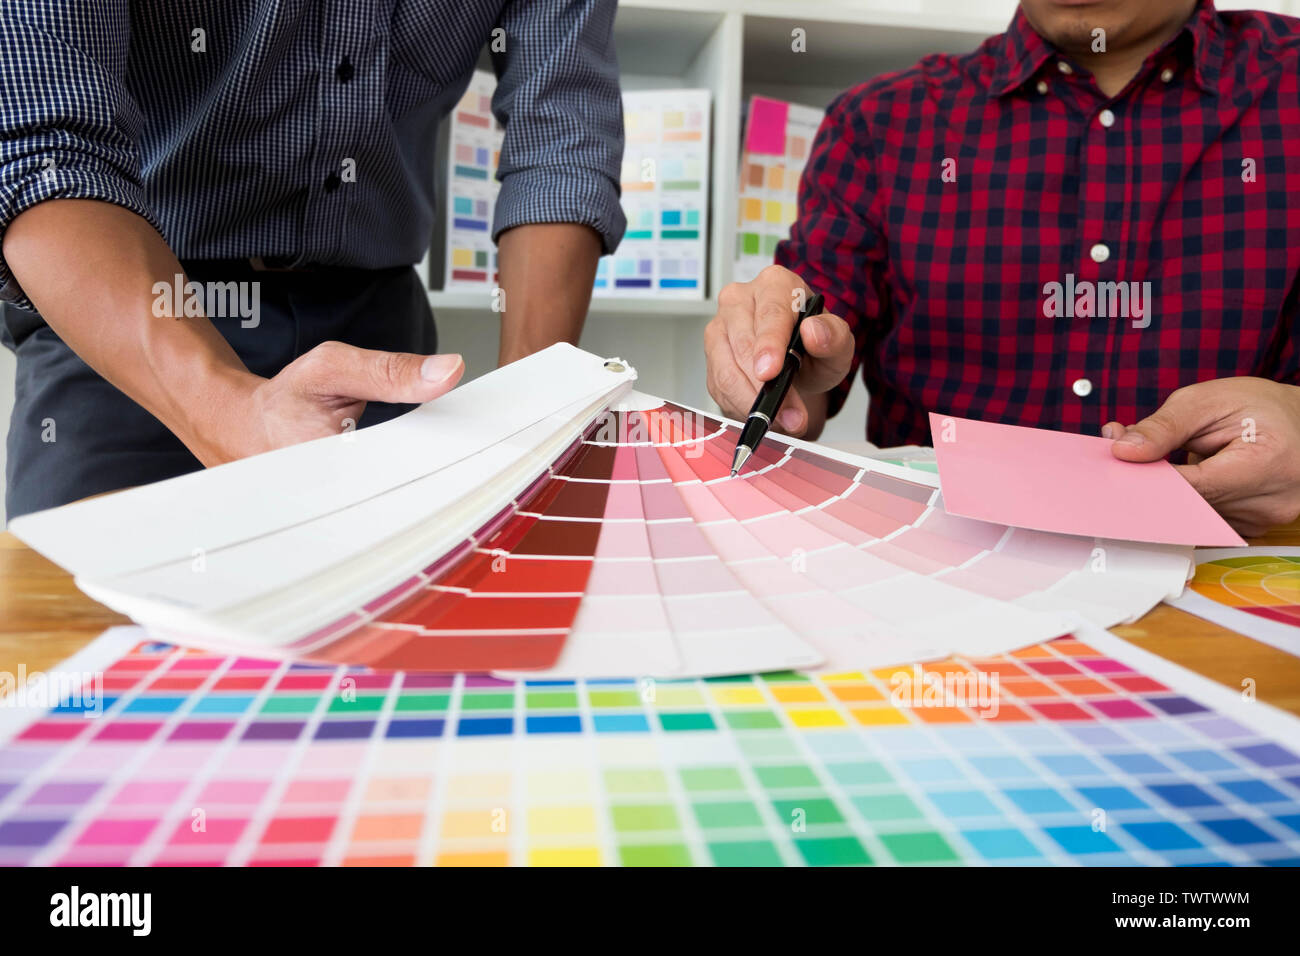 Graphic Designer scegliere toni di colore rosa da bande di colore per la progettazione di idee e progetti creativi, graphic designer. Foto Stock